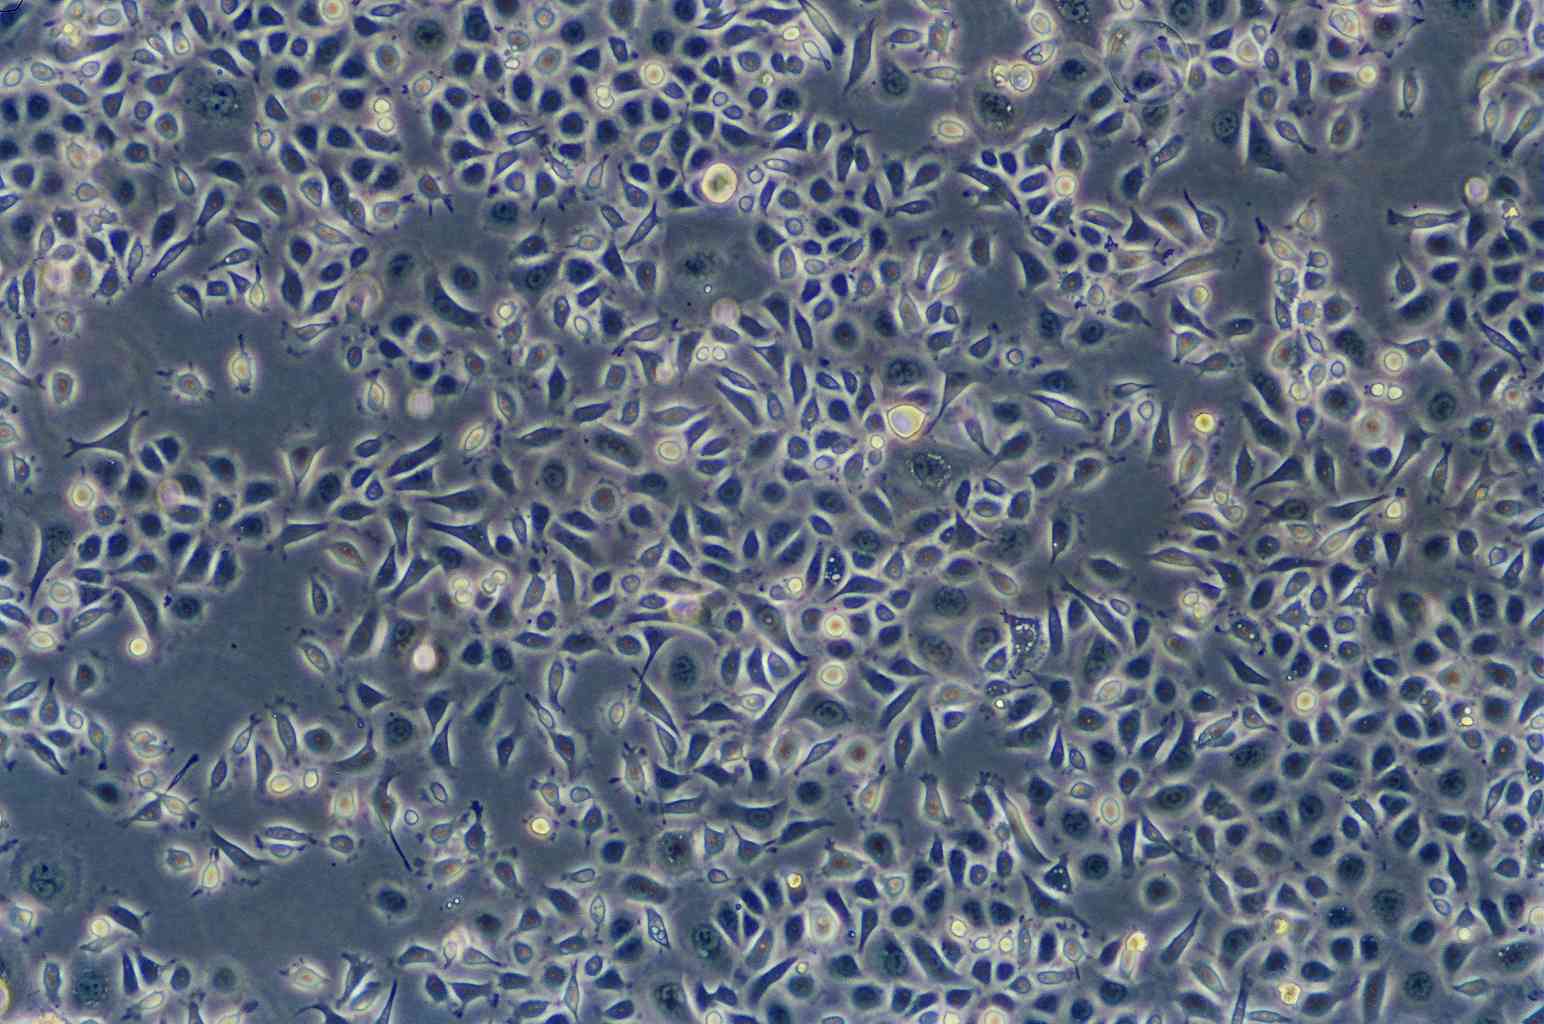 RMC-1 cell line大鼠视网膜Muller细胞系